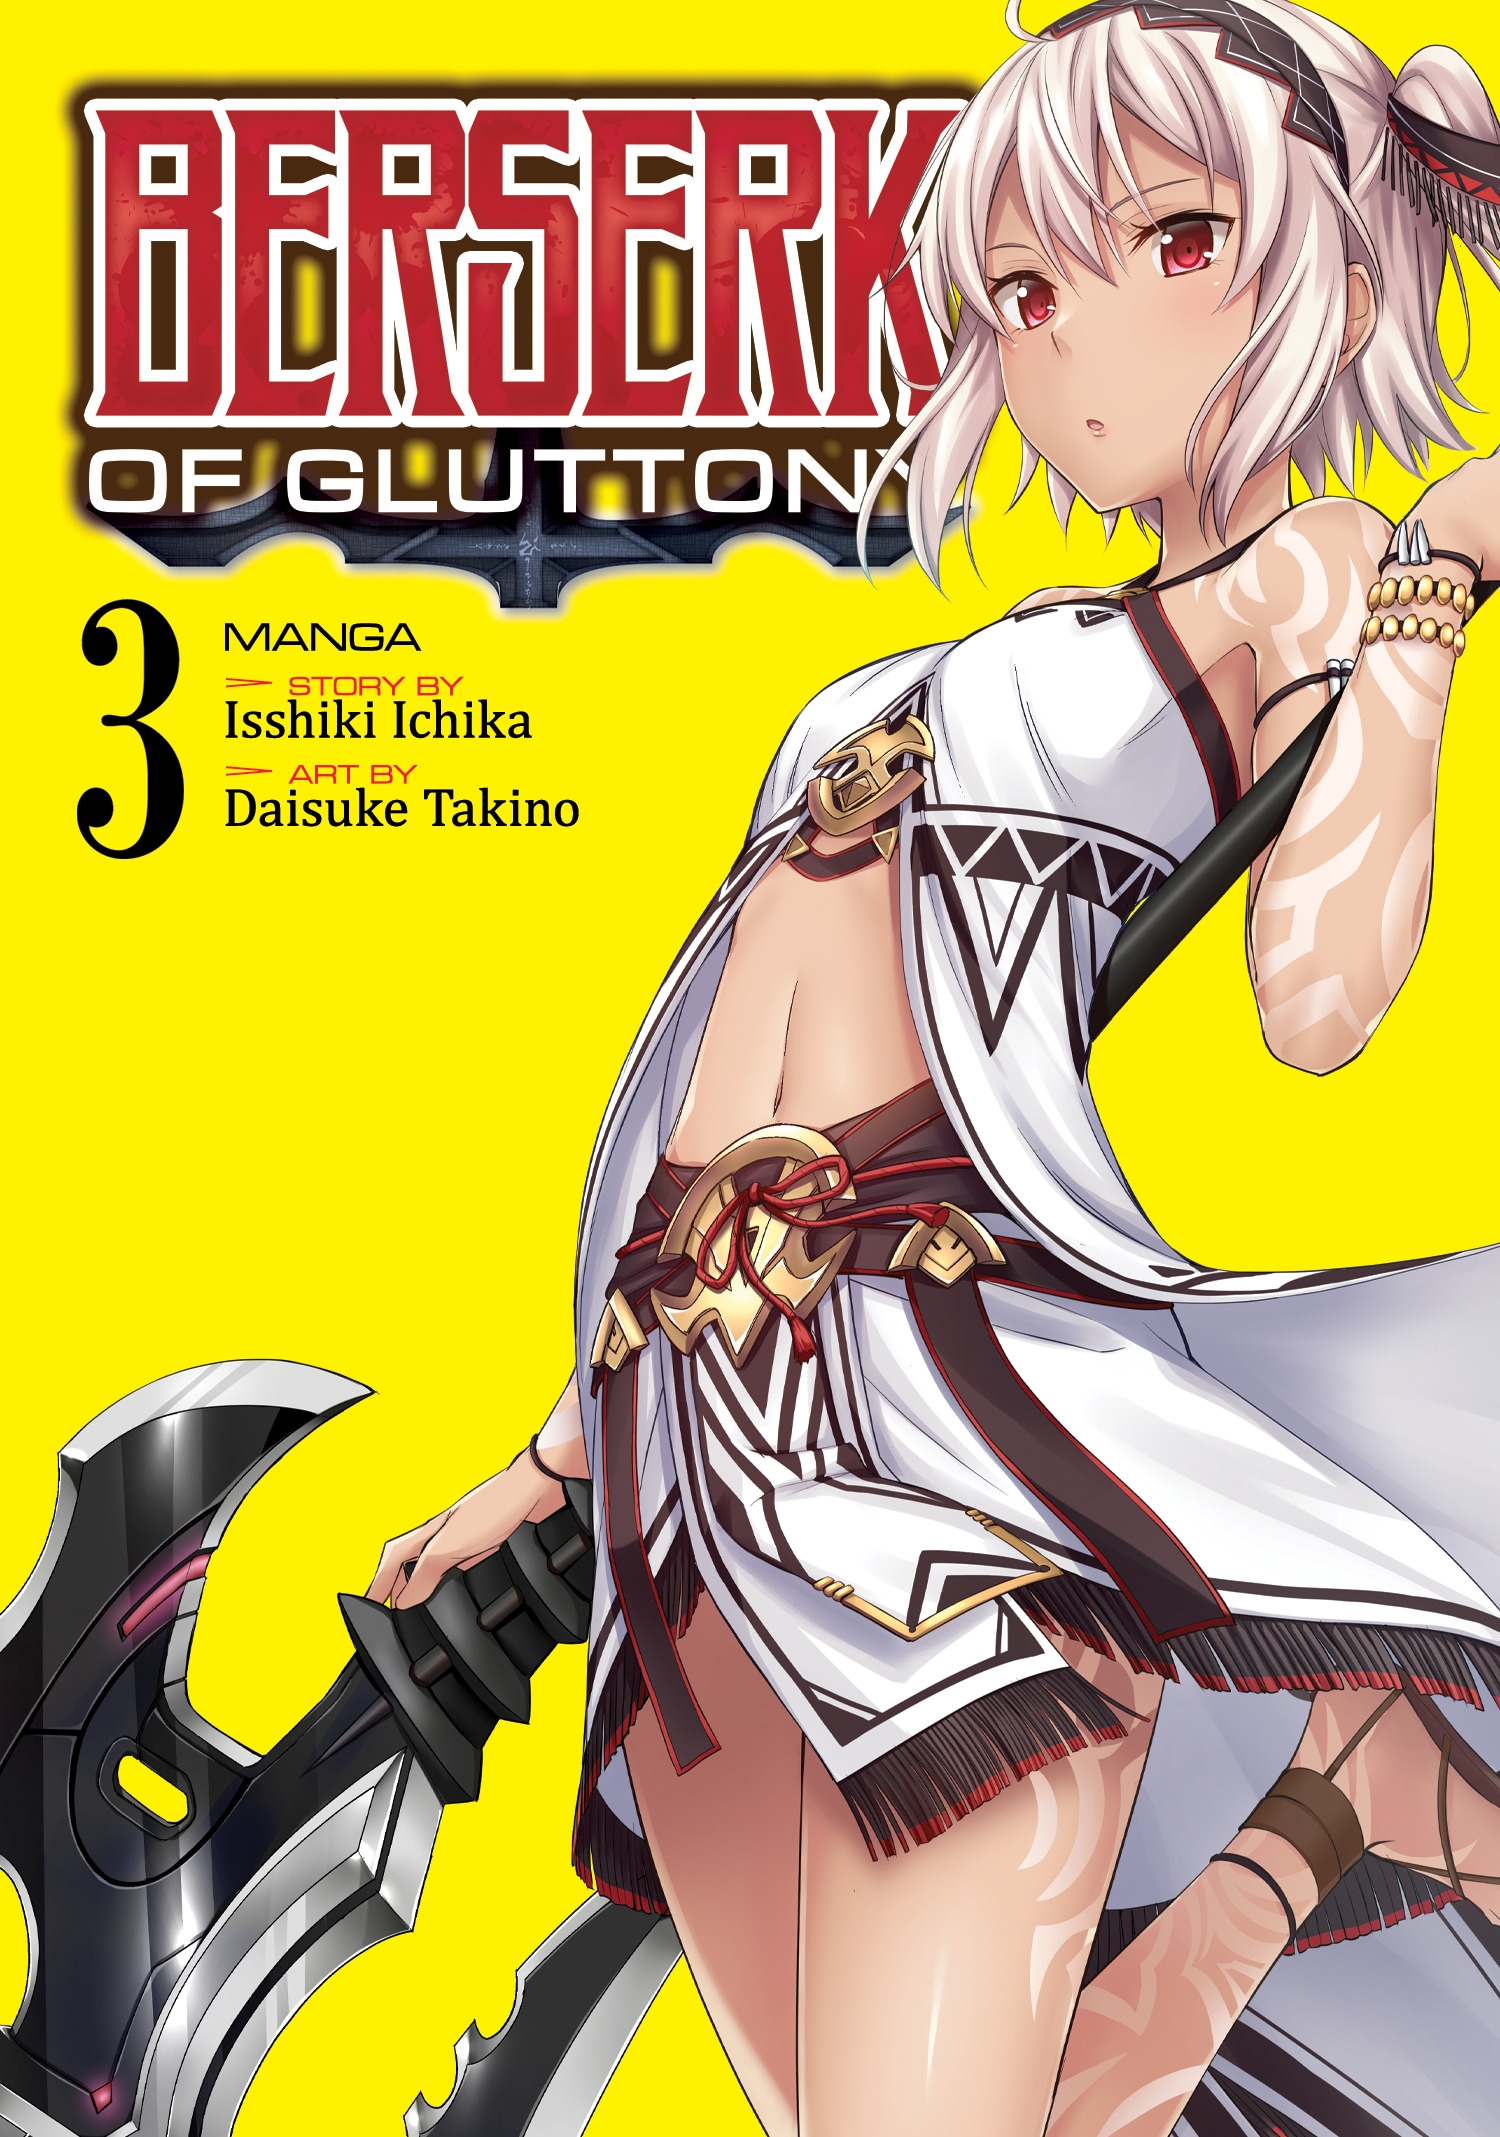 Berserk of Gluttony (Manga) Vol. 3 by Isshiki Ichika - Penguin Books New  Zealand